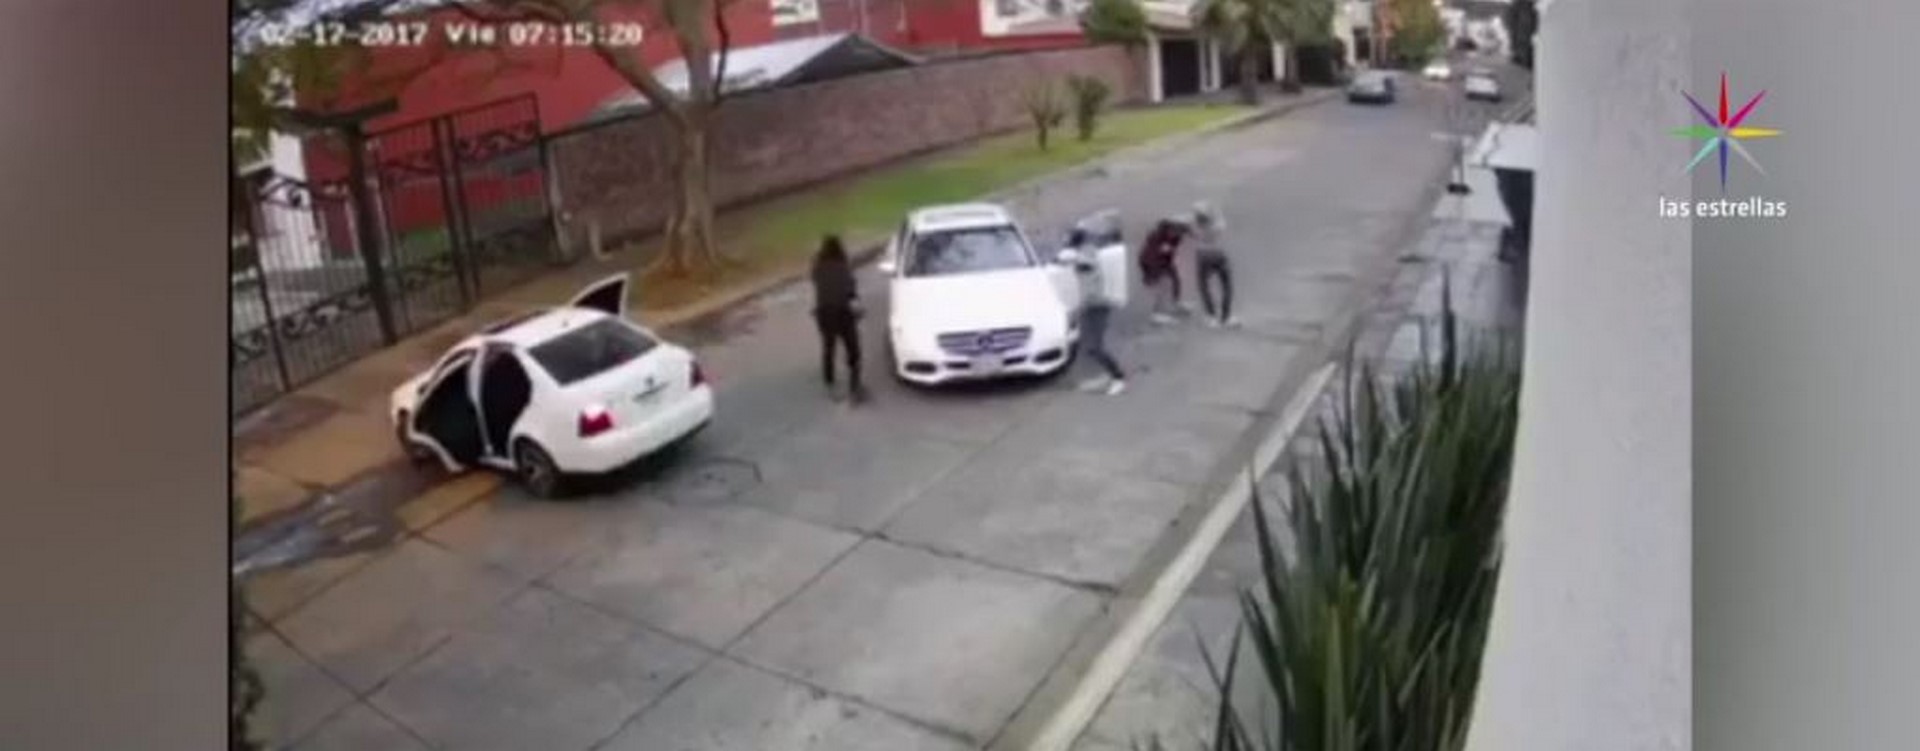 Captan en video el secuestro de una mujer en Uruapan, Michoacán. (Noticieros Televisa)